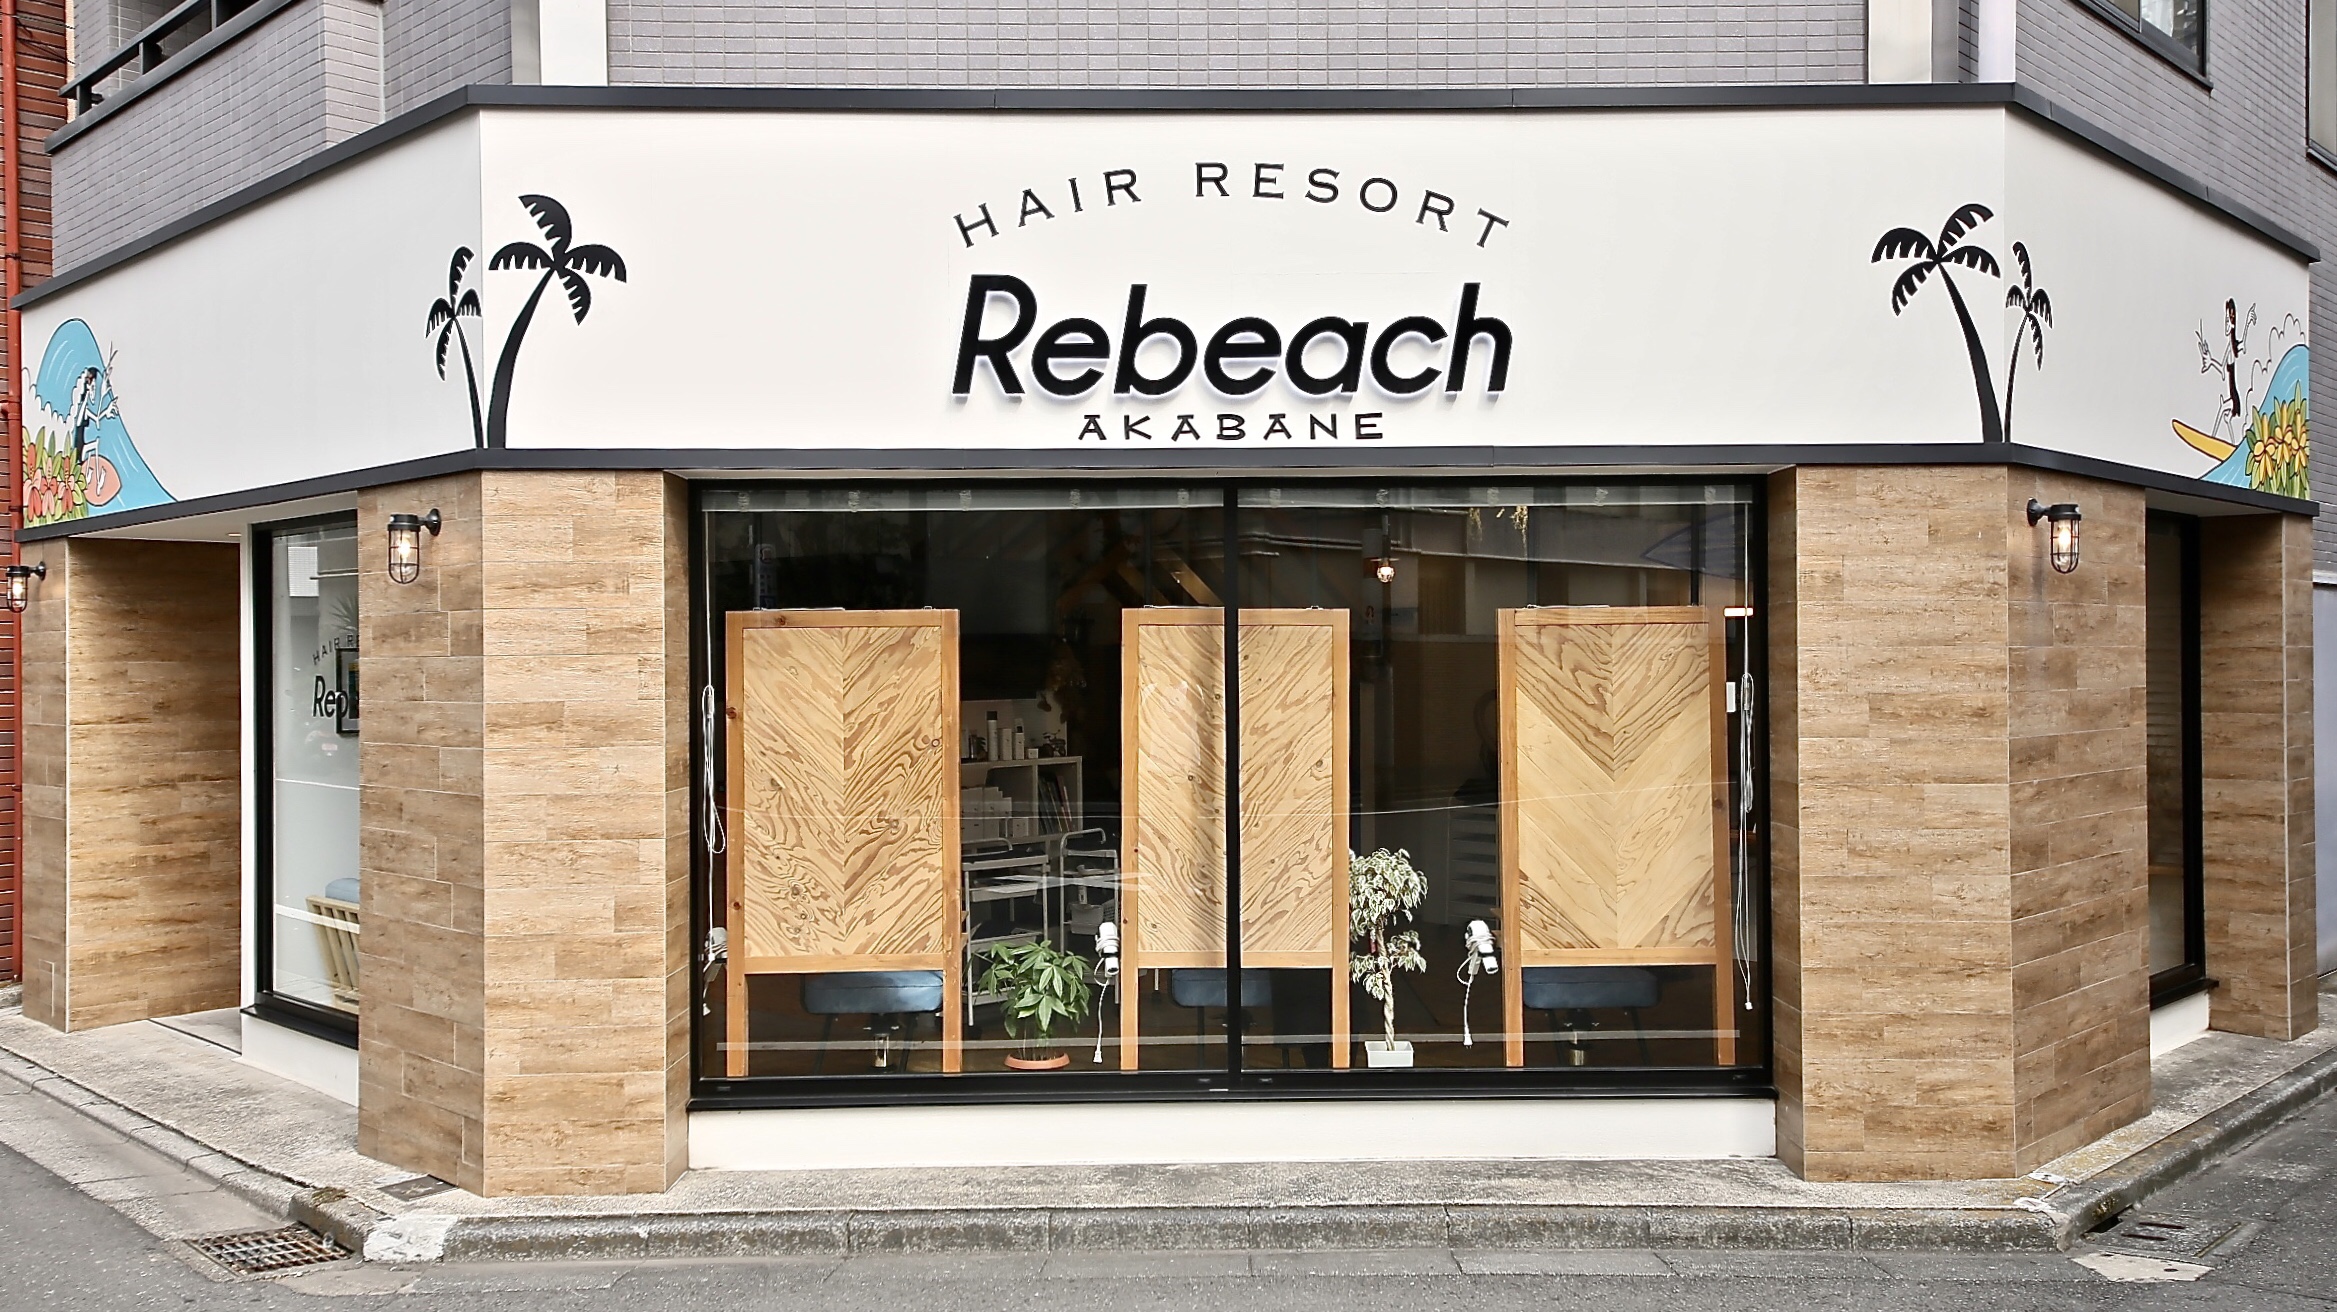 赤羽美容室リビーチ 求人募集 赤羽 美容室 Rebeach Hair Resort 代表 内藤 善勝のブログ